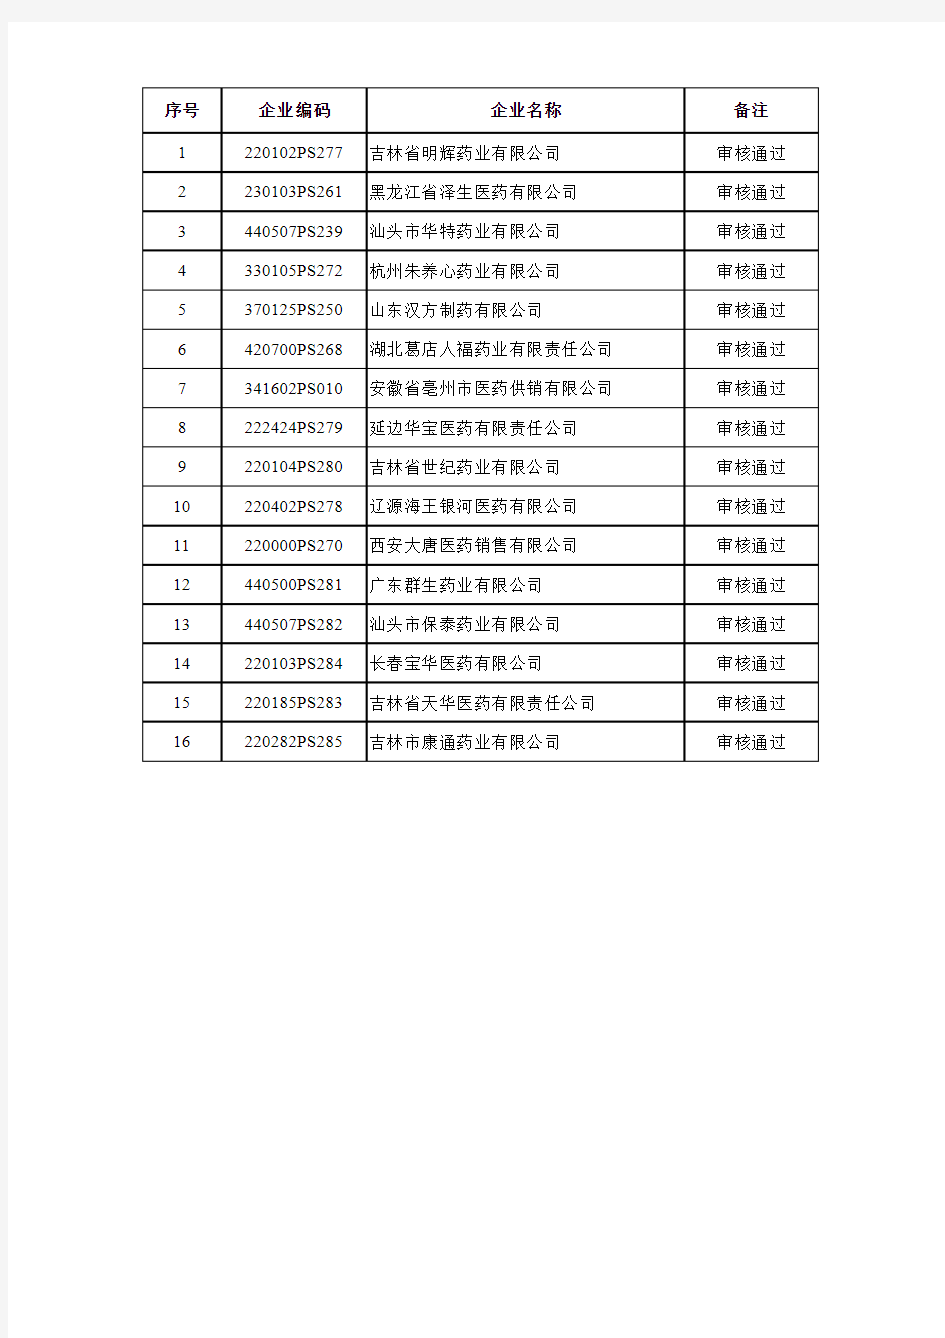 2013年度吉林省医疗机构药品集中采购配送企业名单(第二批)xls